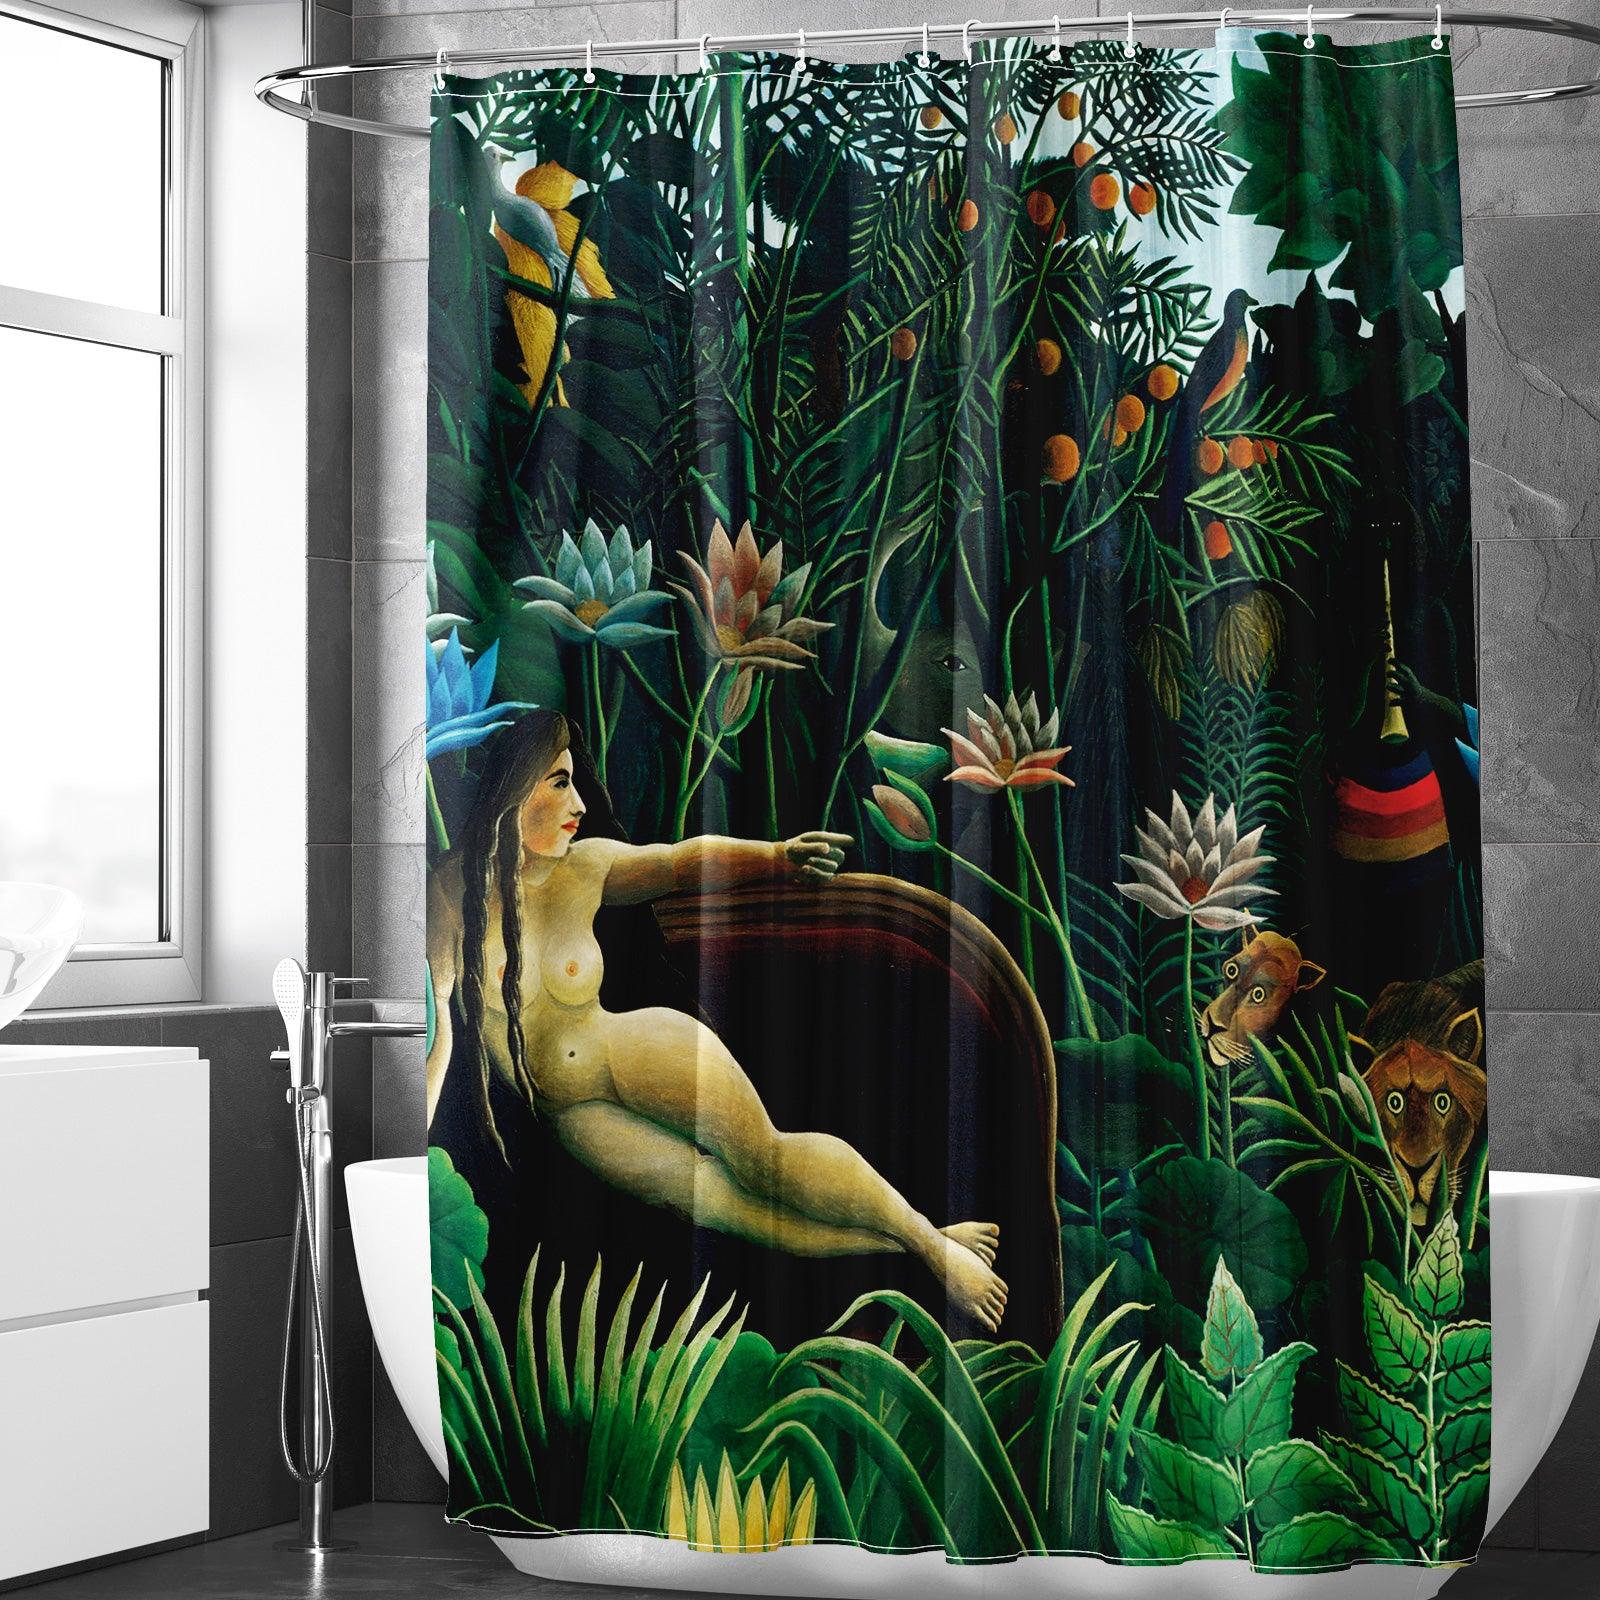 http://www.berkinarts.com/cdn/shop/files/abstract-art-shower-curtain-set-the-dream-by-henri-rousseau-berkin-arts-1.jpg?v=1688965835